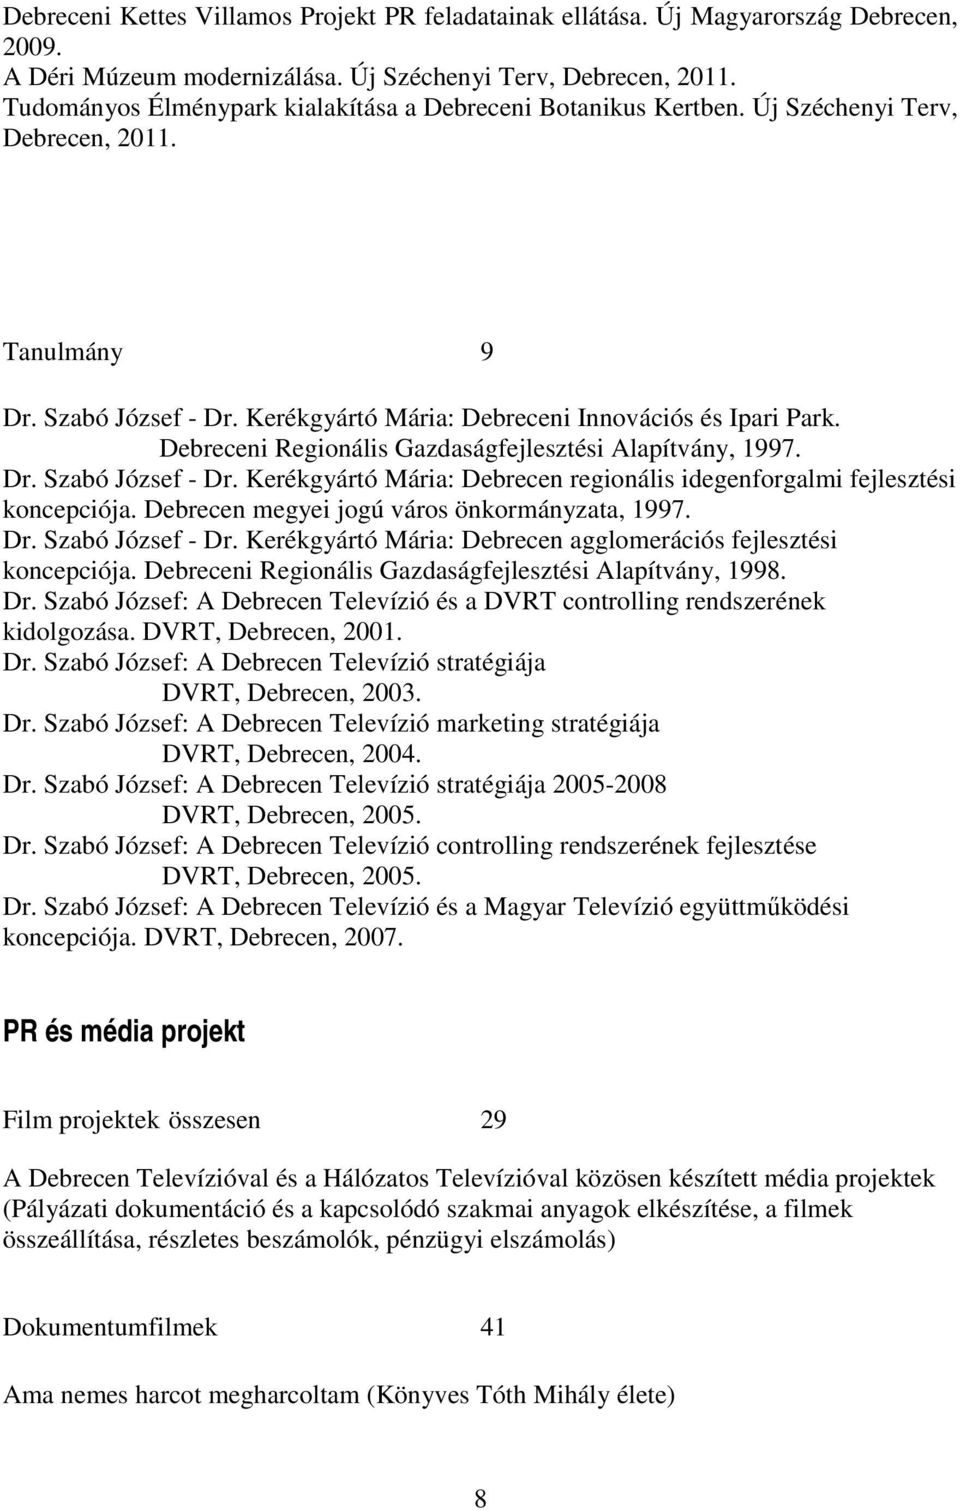 Debreceni Regionális Gazdaságfejlesztési Alapítvány, 1997. Dr. Szabó József - Dr. Kerékgyártó Mária: Debrecen regionális idegenforgalmi fejlesztési koncepciója.